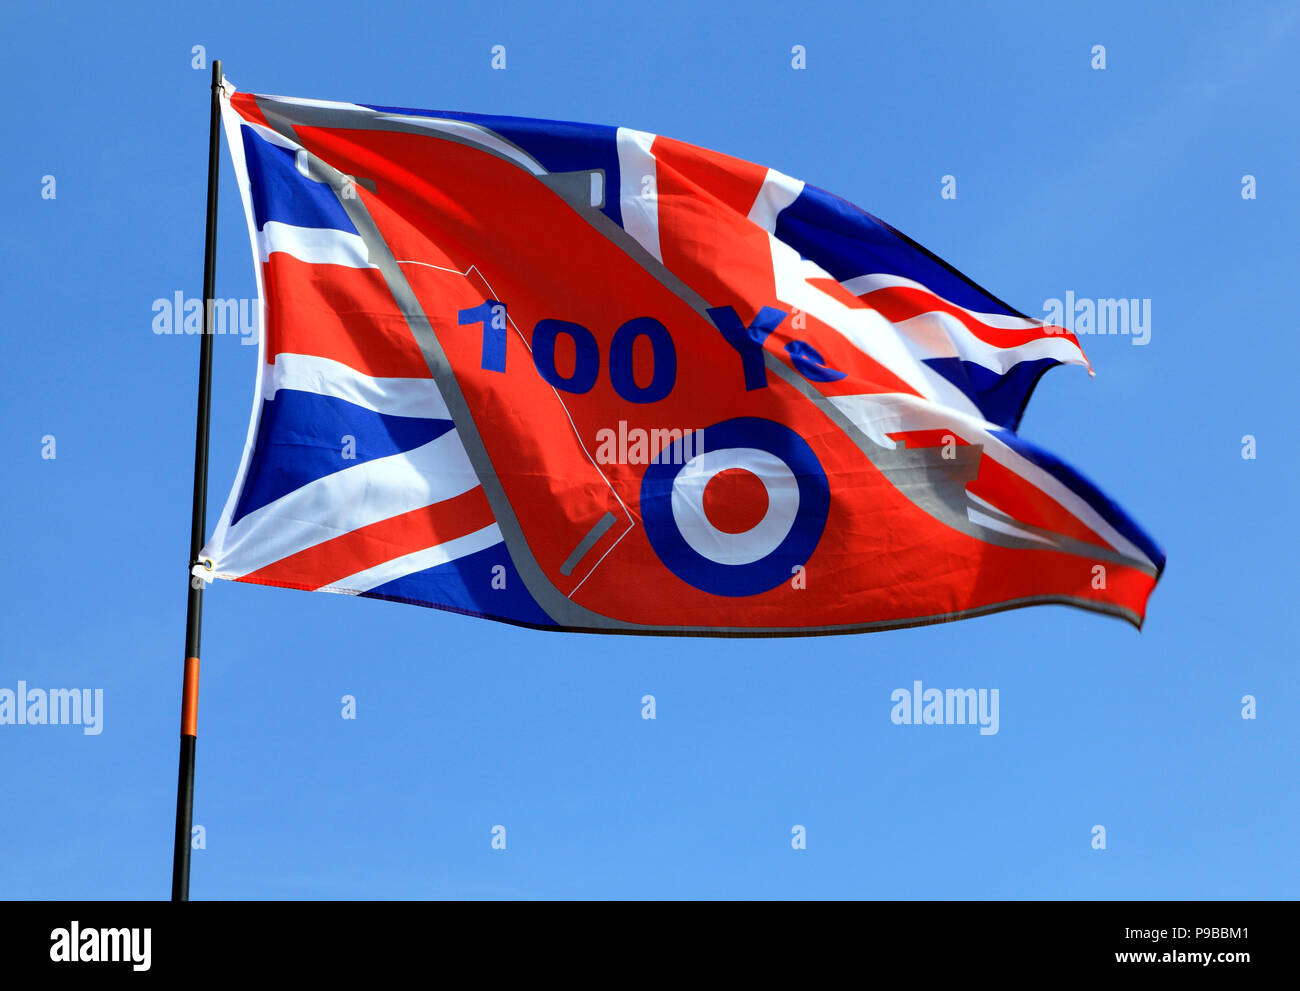 RAF, Royal Air Force, 100 ans, centenaire, drapeau commémoratif, Union Jack, logo RAF Banque D'Images